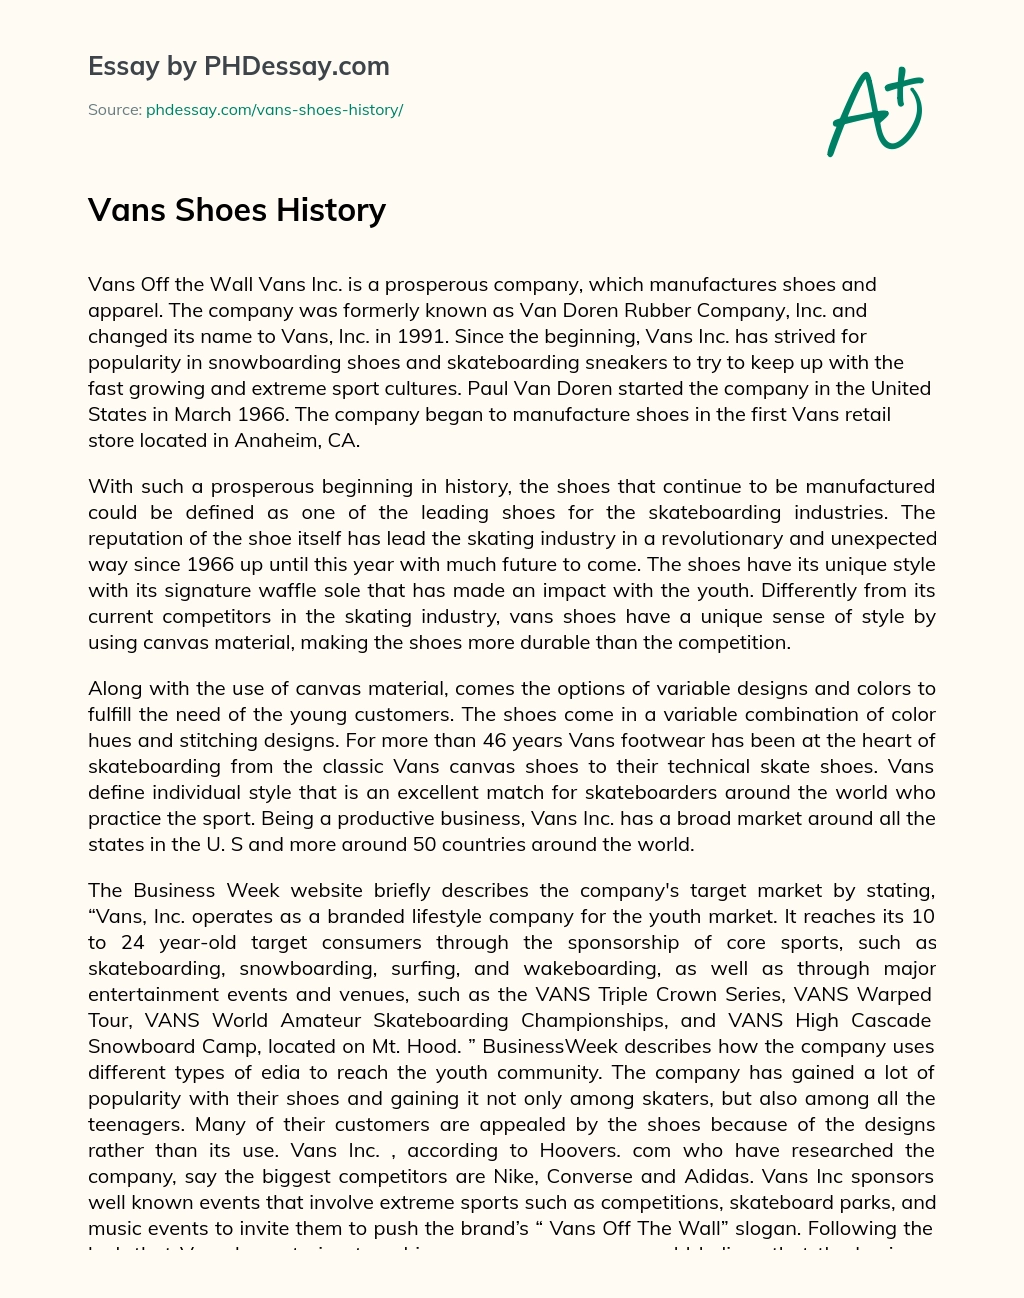 Vans Shoes History essay